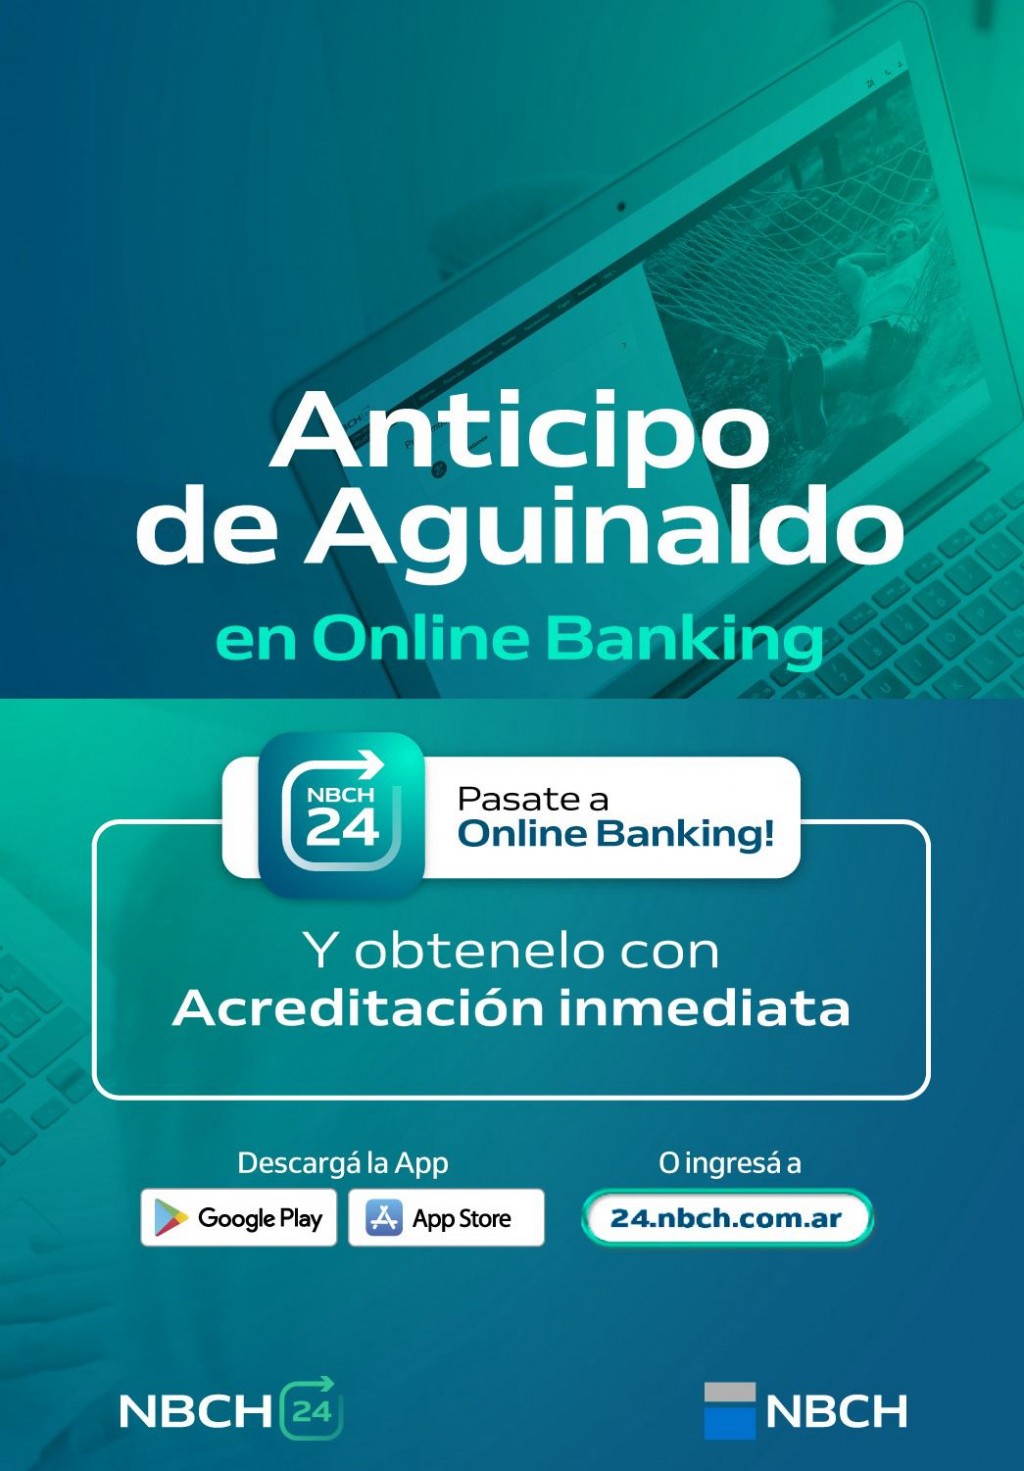 El anticipo de aguinaldo ya se puede solicitar en Online Banking